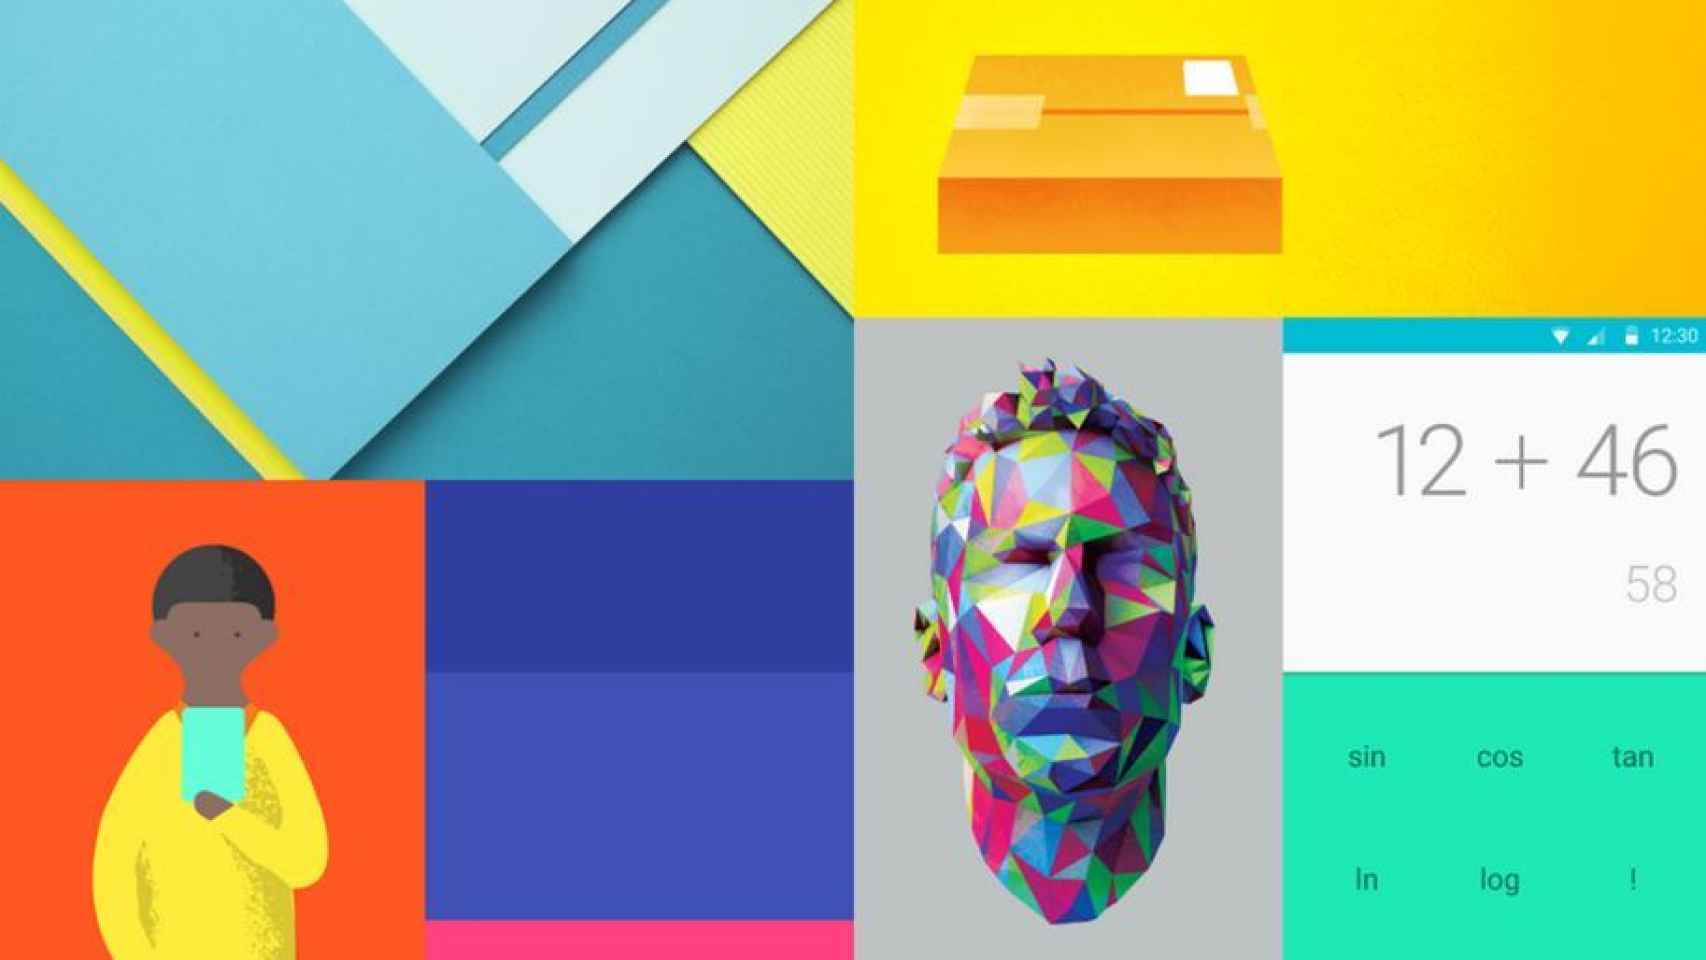 Las 20 mejores apps Android al estilo Material Design